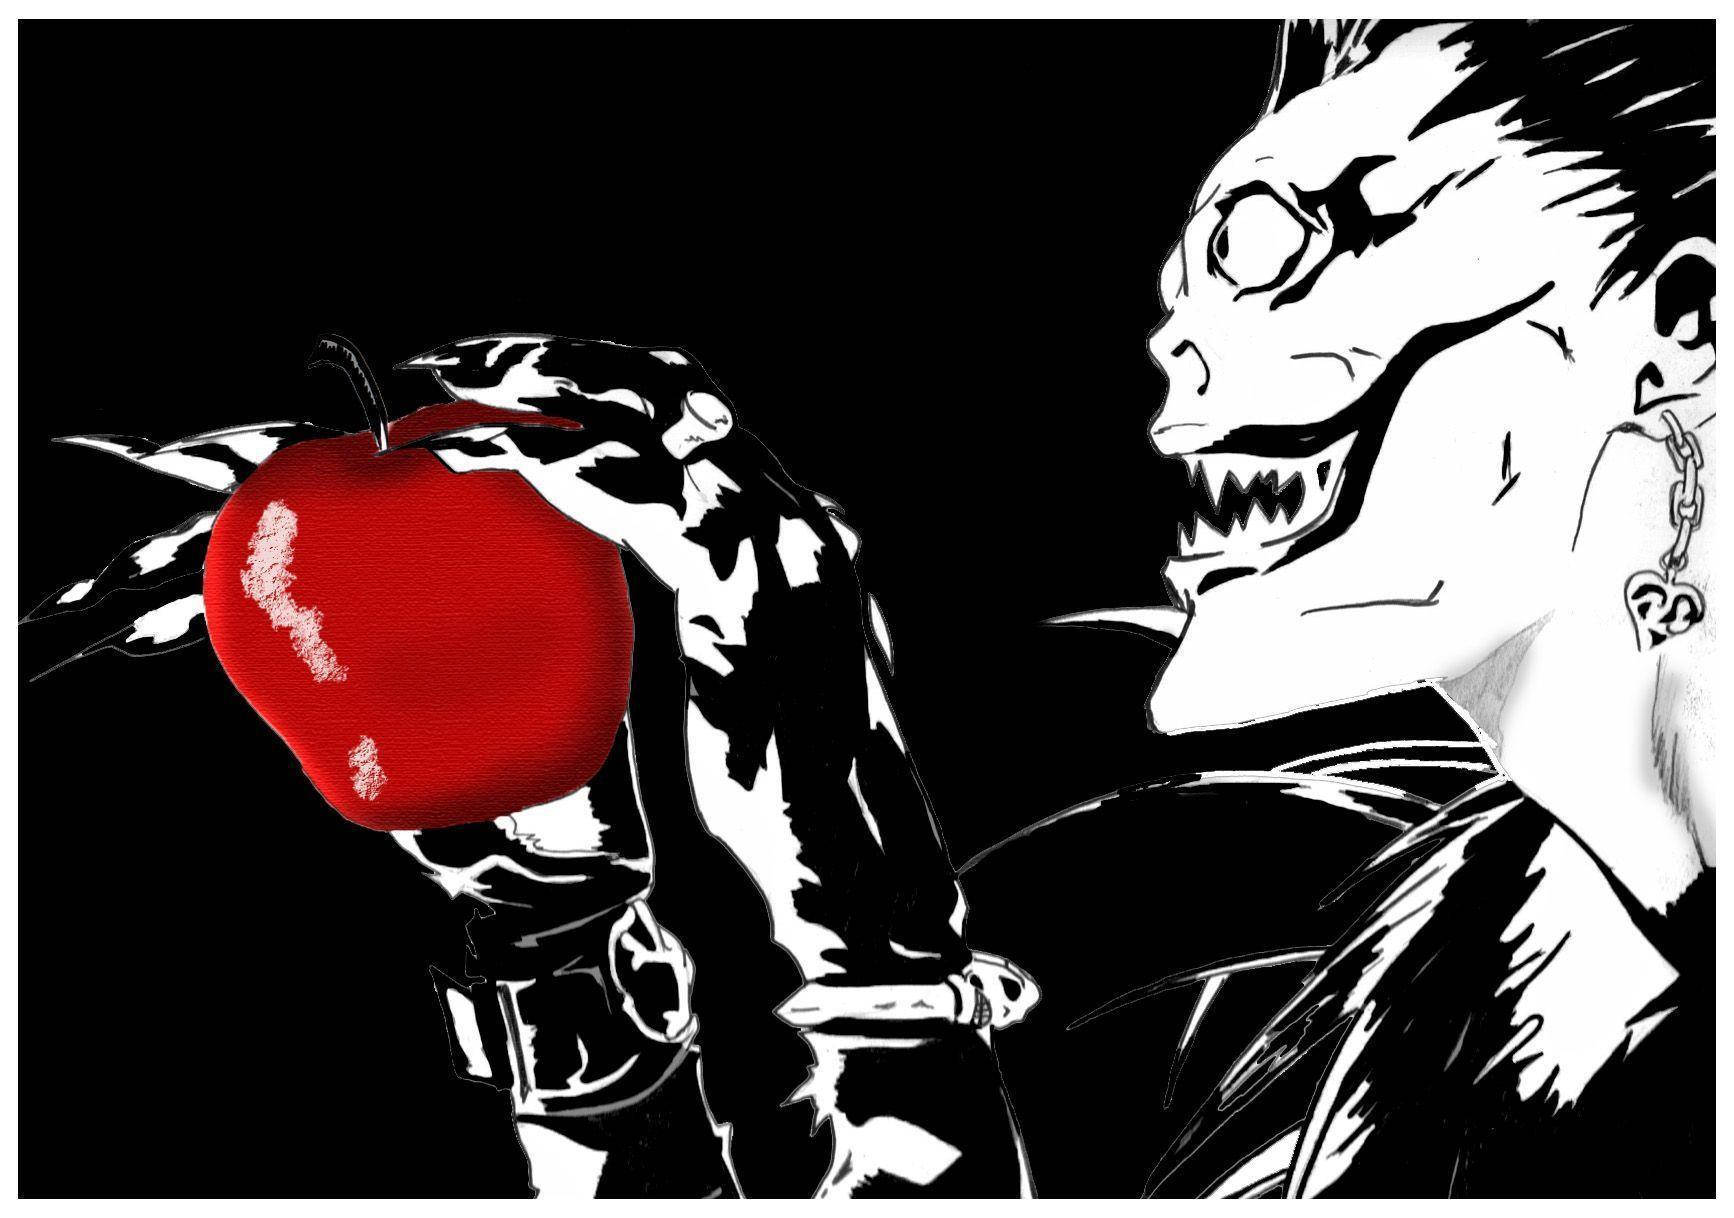 Ryuk Loves Red Apples Background